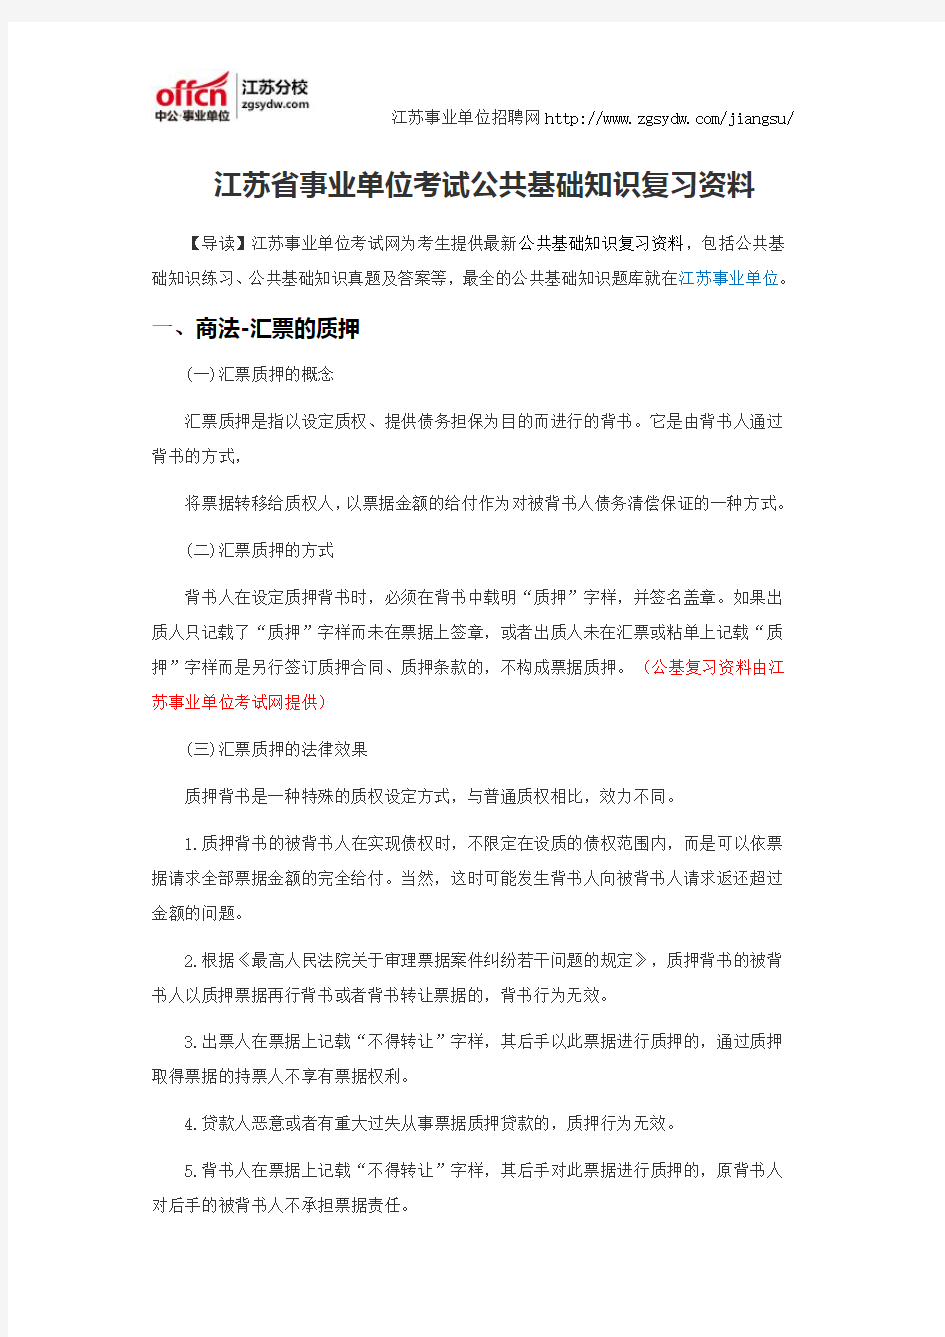 江苏省事业单位考试公共基础知识复习资料